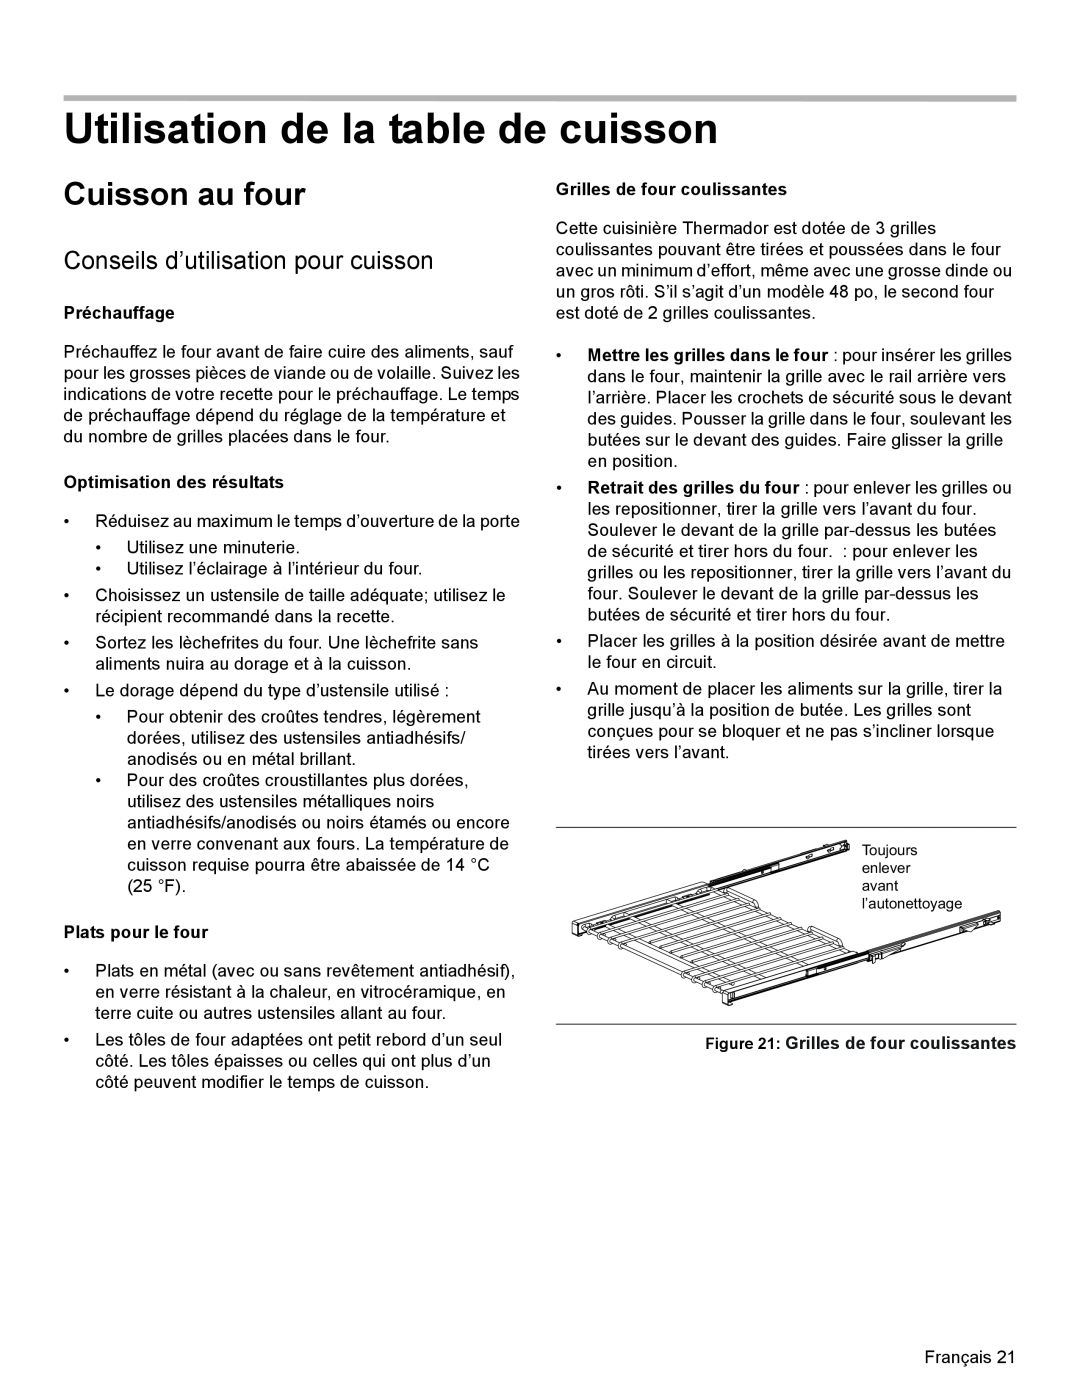 Thermador PRL30, PRL36, PRG30 manual Utilisation de la table de cuisson, Cuisson au four, Conseils d’utilisation pour cuisson 